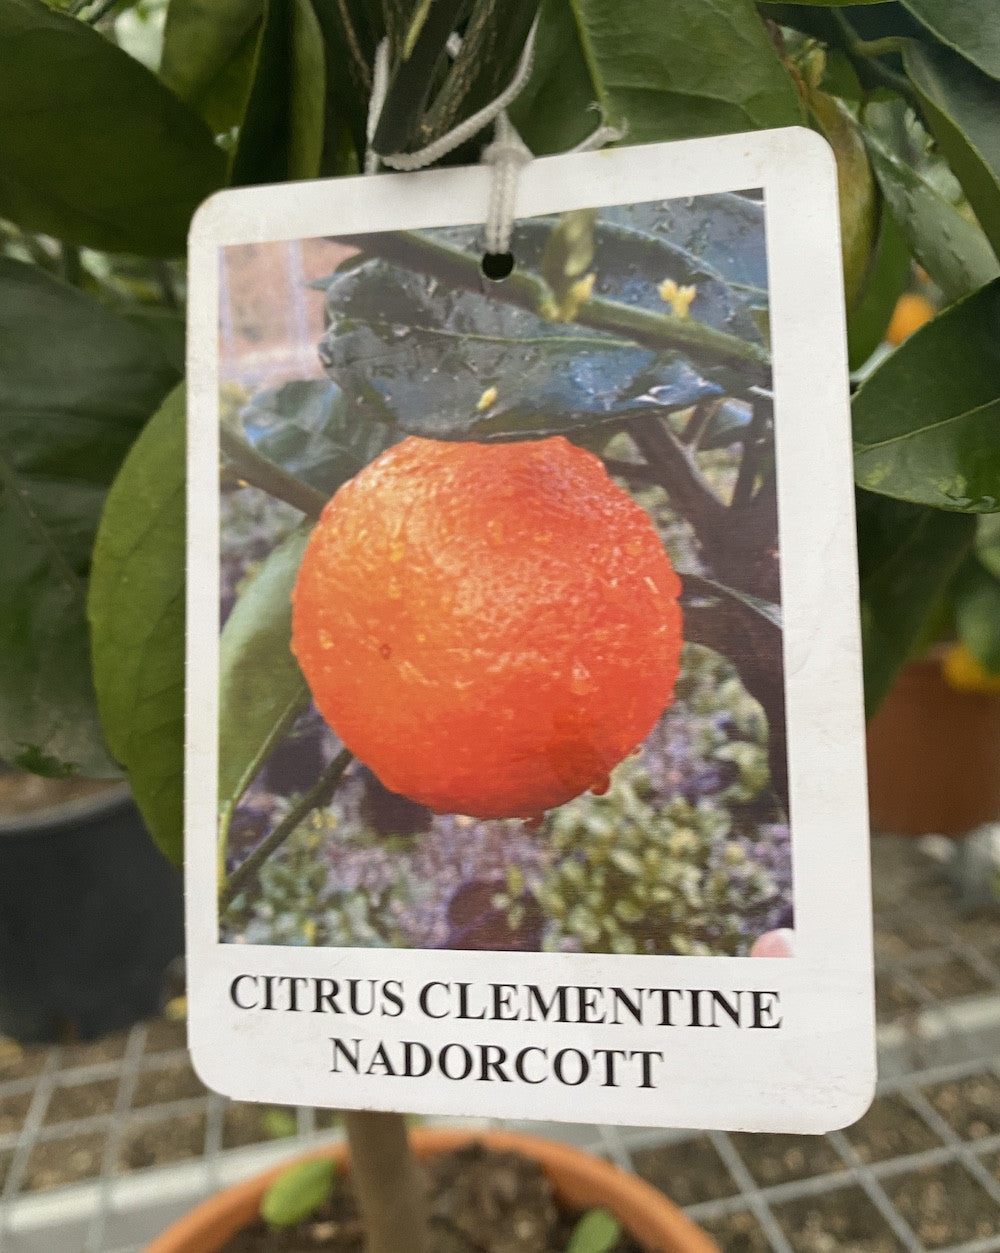 Citrus Clementine Nadorcott